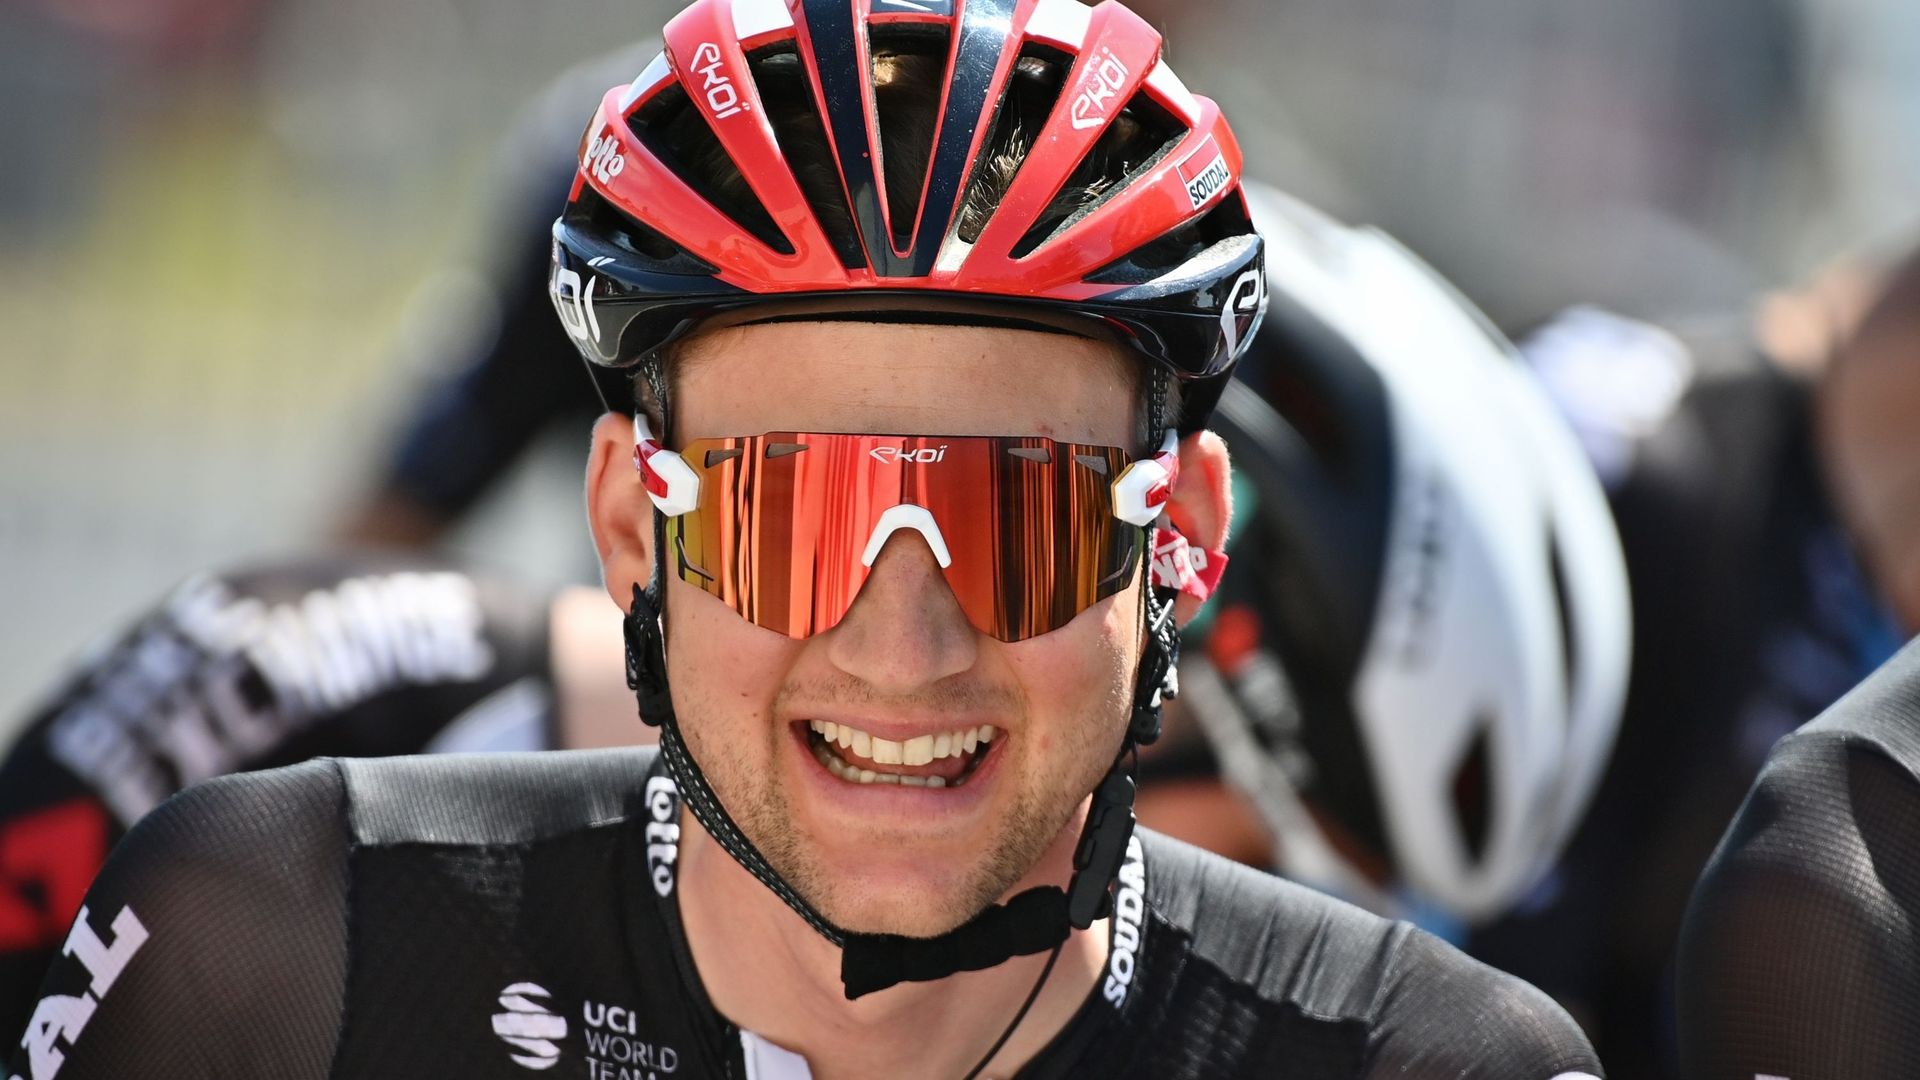 Le coureur belge, de l'équipe Lotto-Soudal, a remporté le Trofeo Serra de Tramuntana (1.1), troisième course du Challenge cycliste de Majorque, pour la quatrième fois de sa carrière, vendredi.